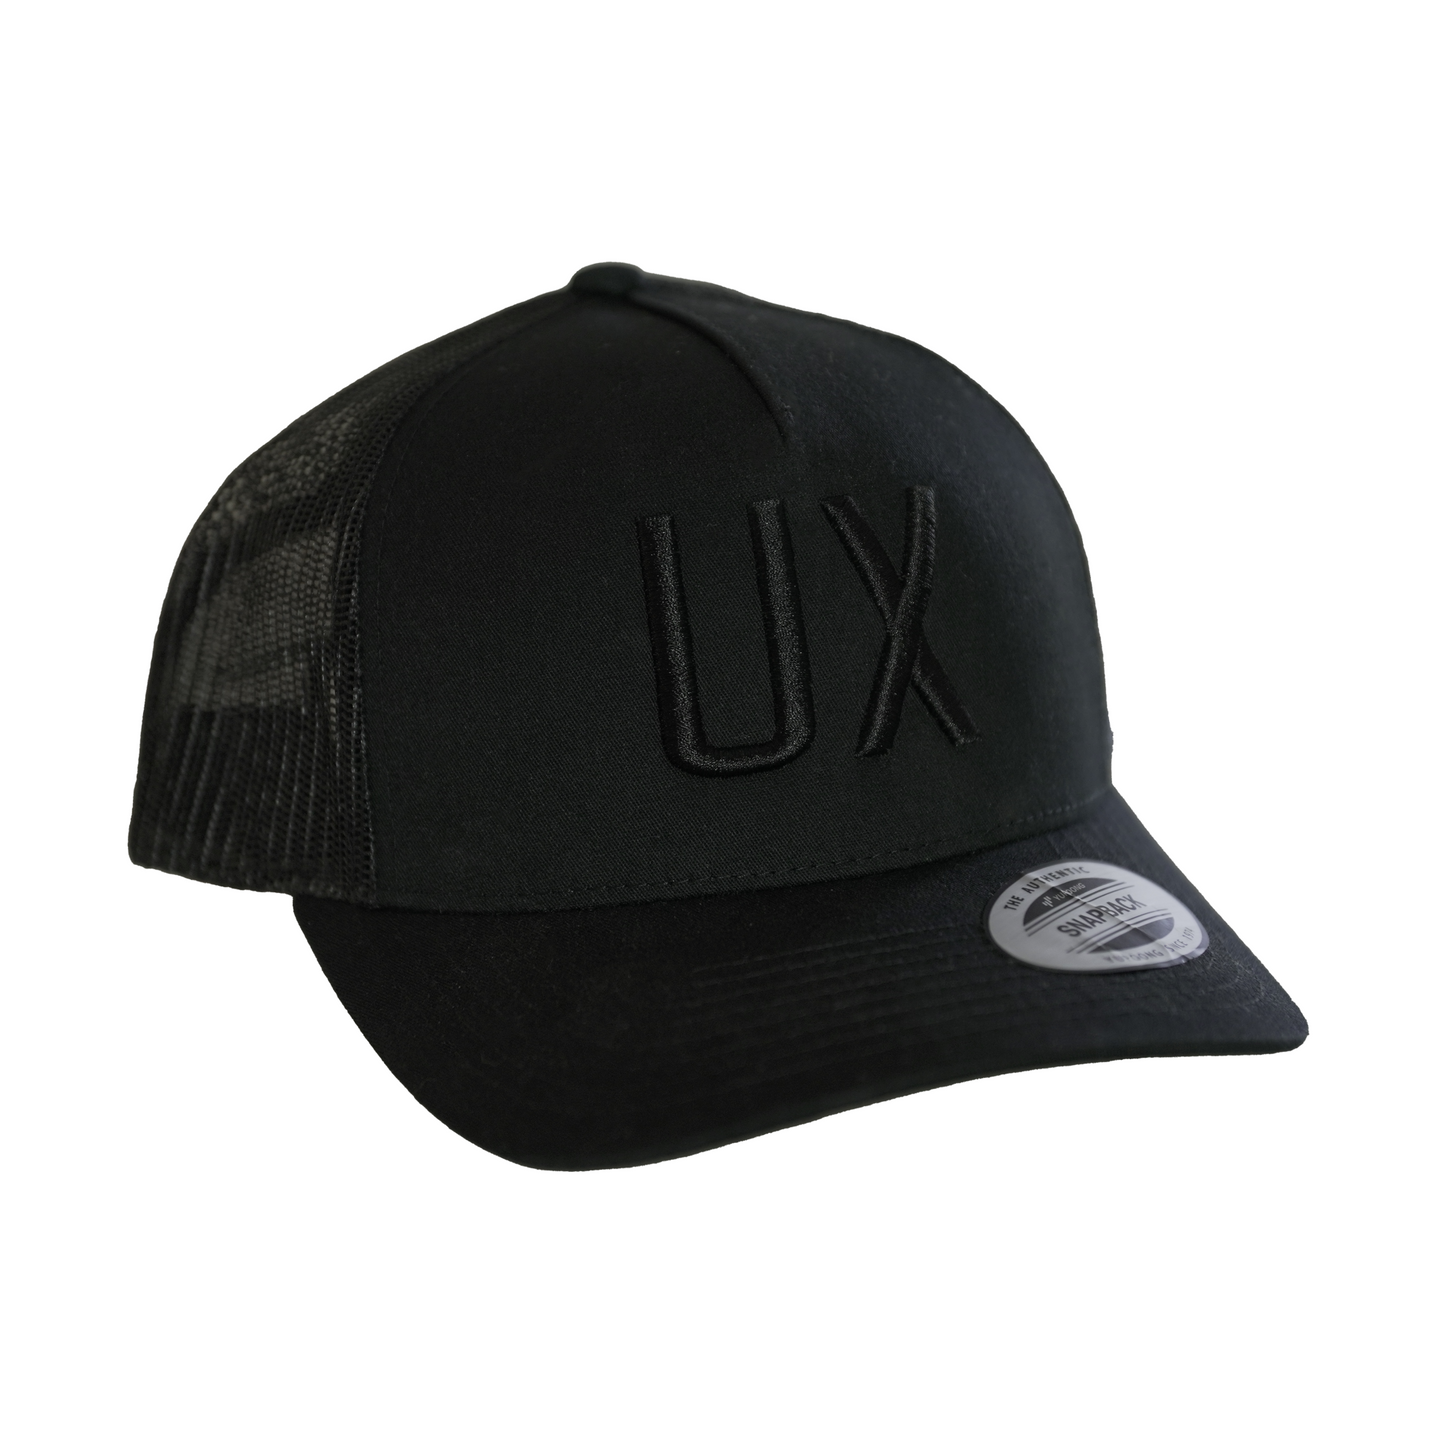 UX Trucker Cap